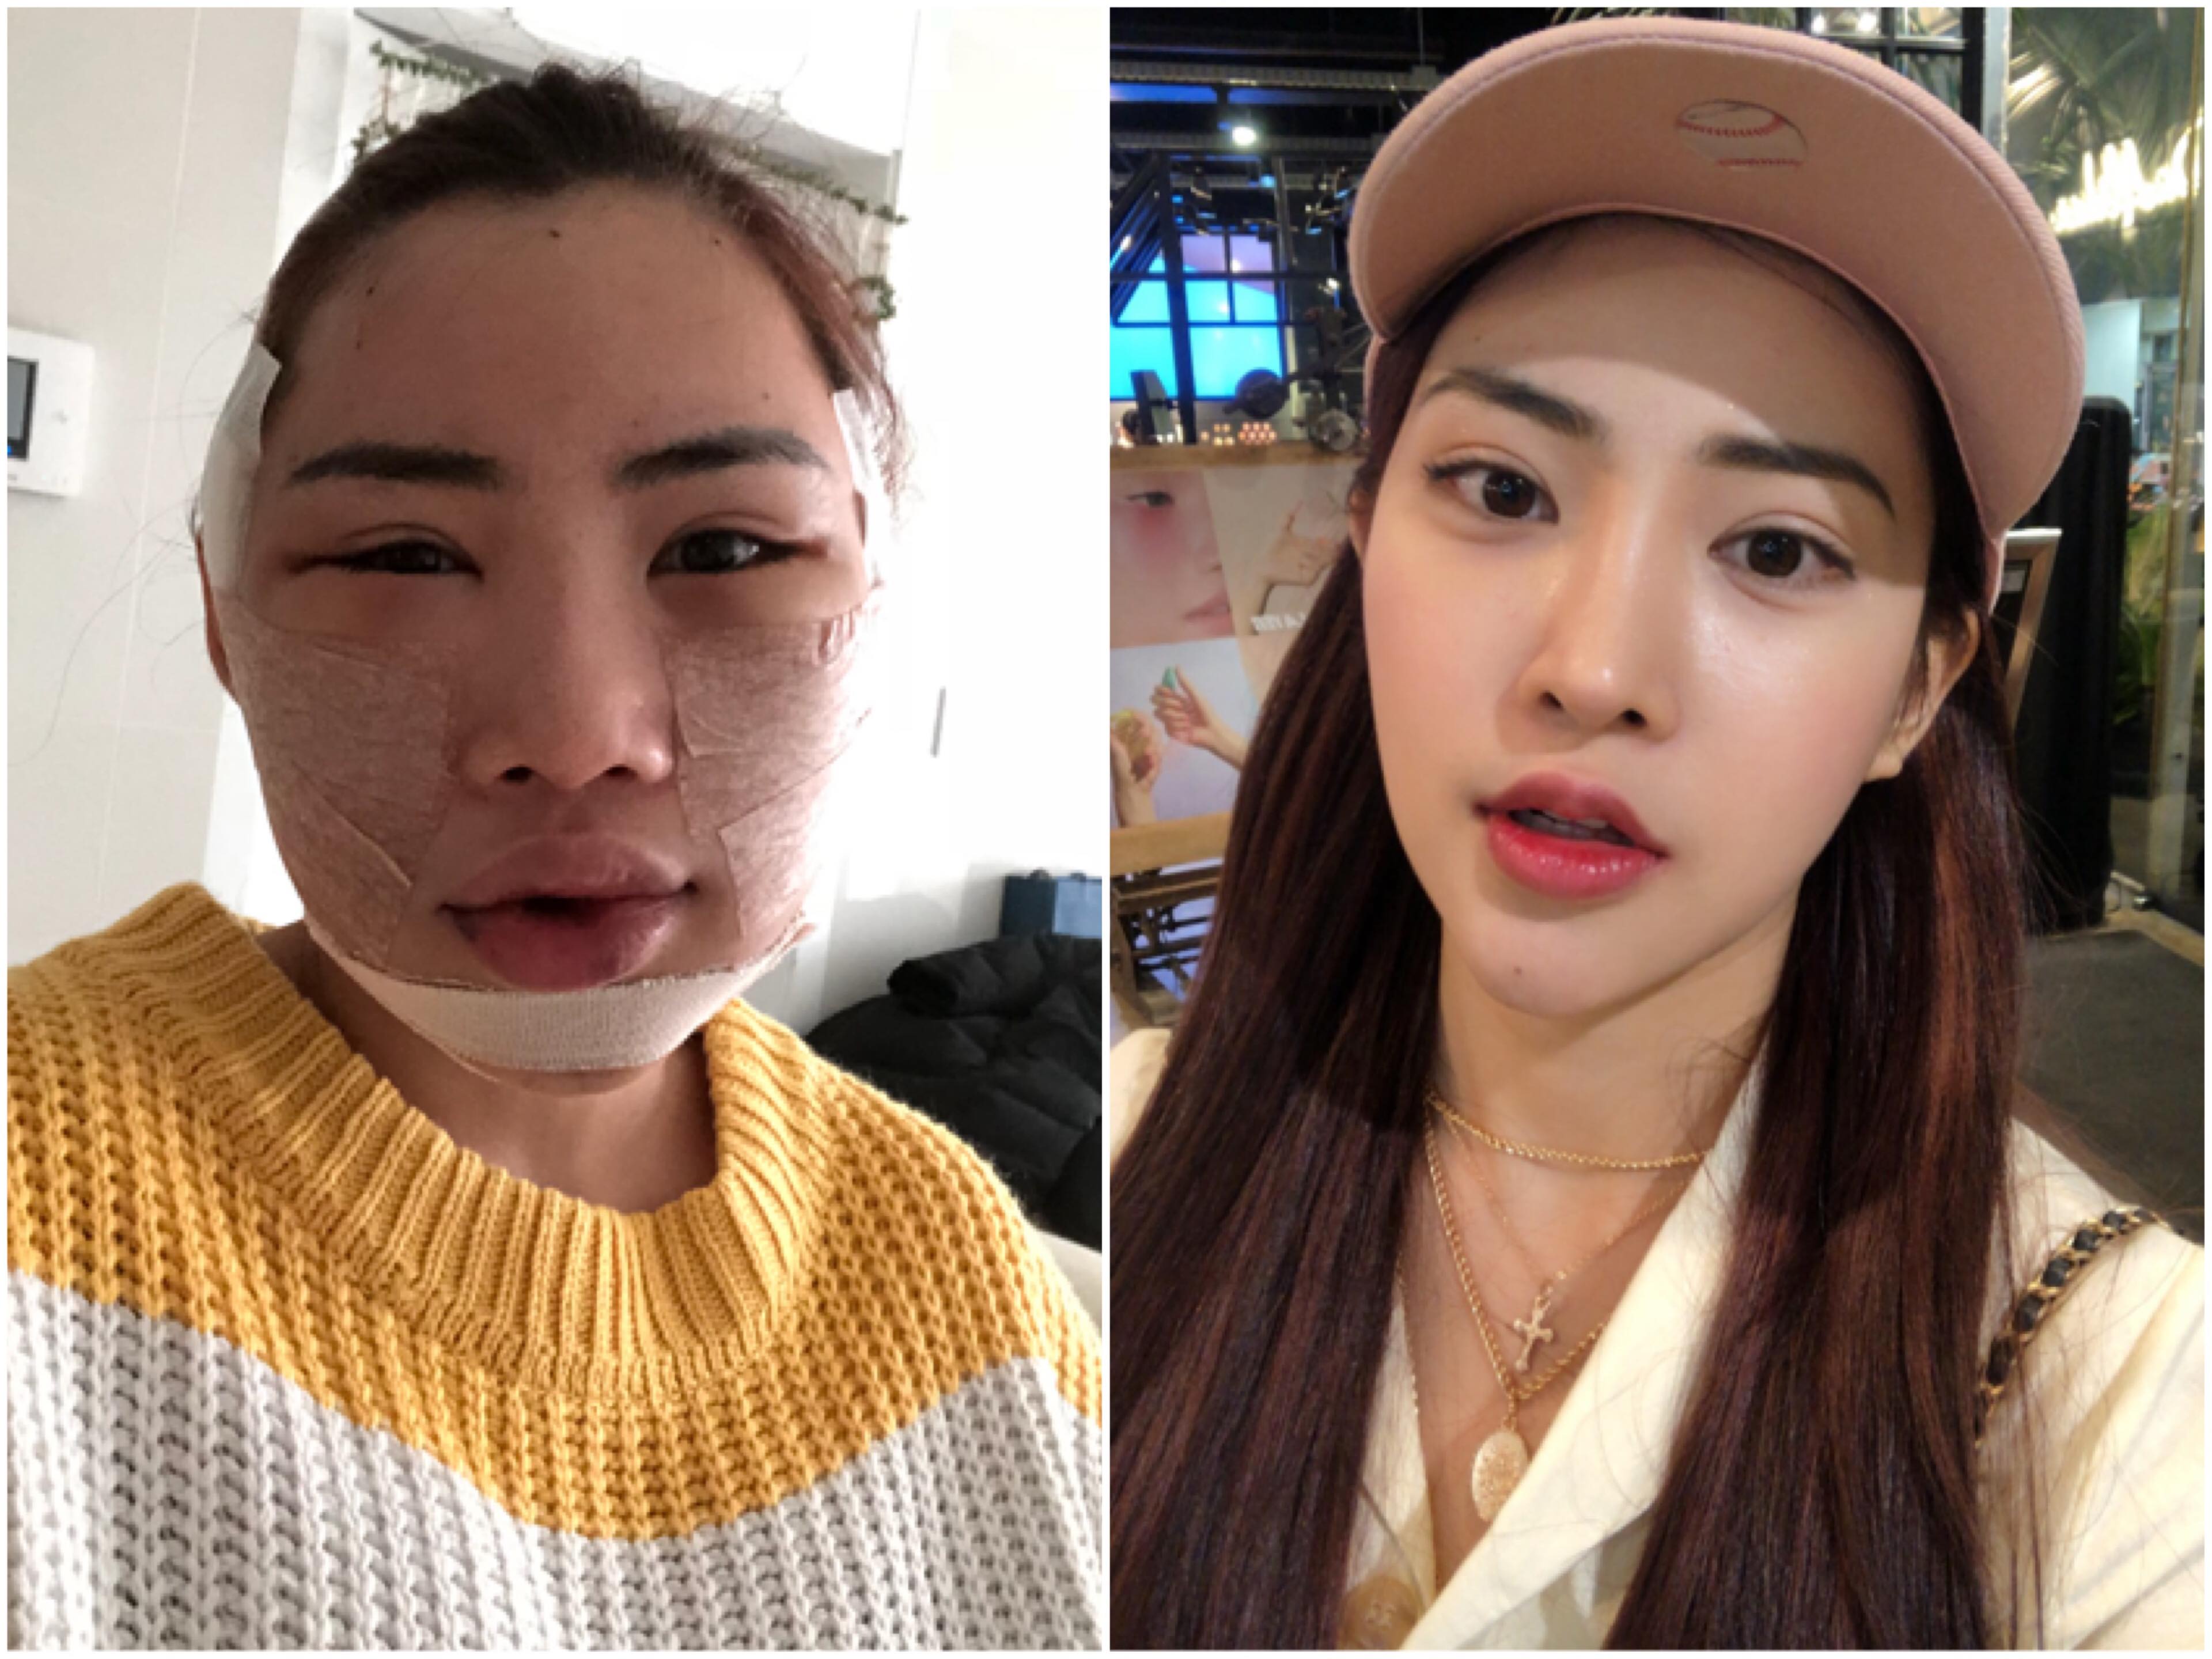 ศัลยกรรมเกาหลี : แปลงร่าง เป็นสาวสายเกา จนเพื่อนจำไม่ได้!!!!!!! รีวิวพลีชีพ  บอกเลยเจ็บแต่จบจริงๆค่าา++ - Pantip